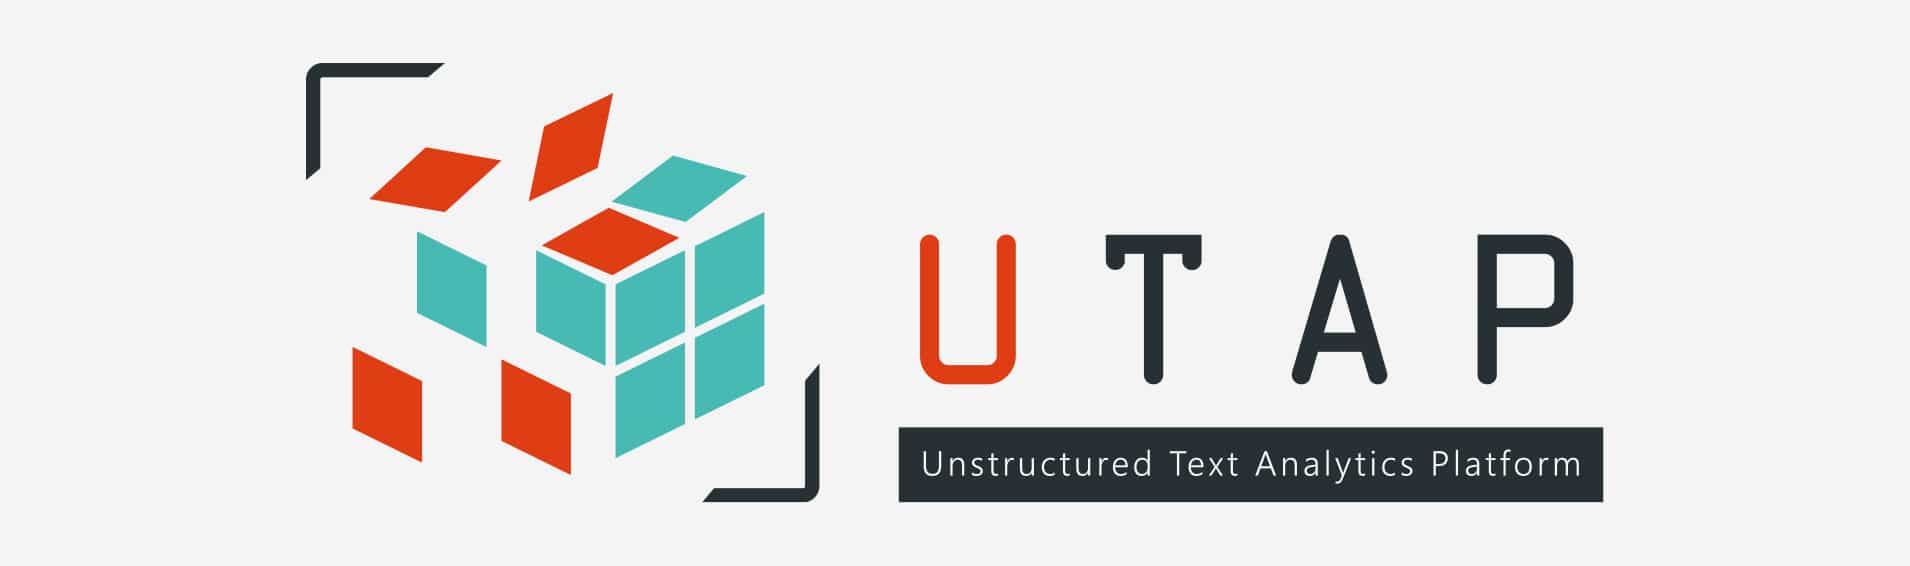 Unstructured Text Analytics Platform (UTAP) – The genesis